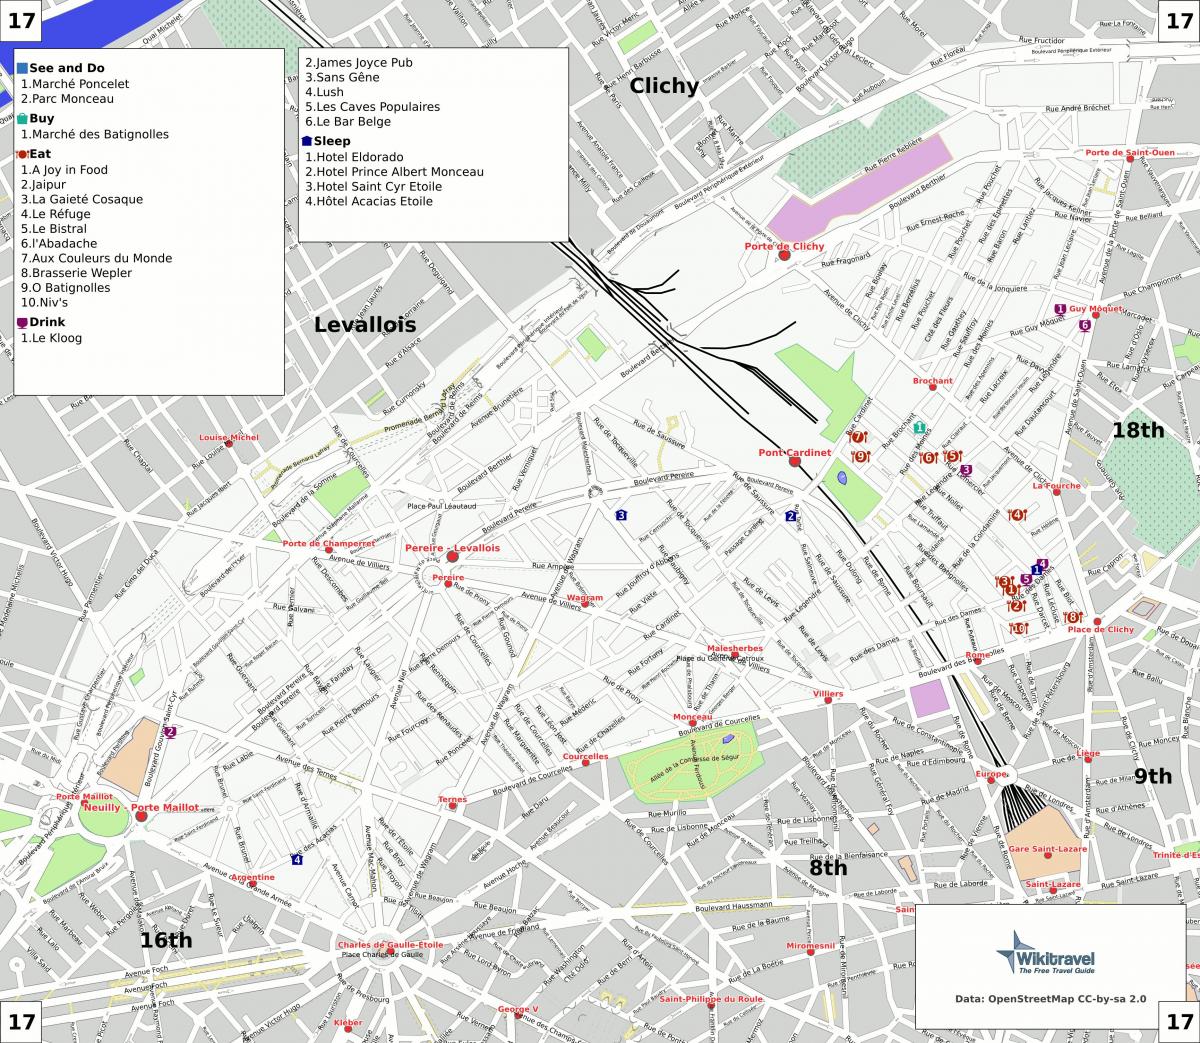 Map of 17th arrondissement of Paris